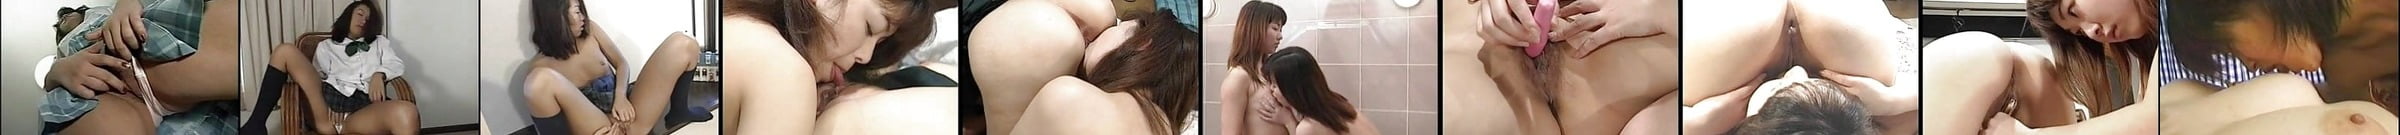 Asian Lesbian Orgasm Massage Free Free Asian Ipad Porn